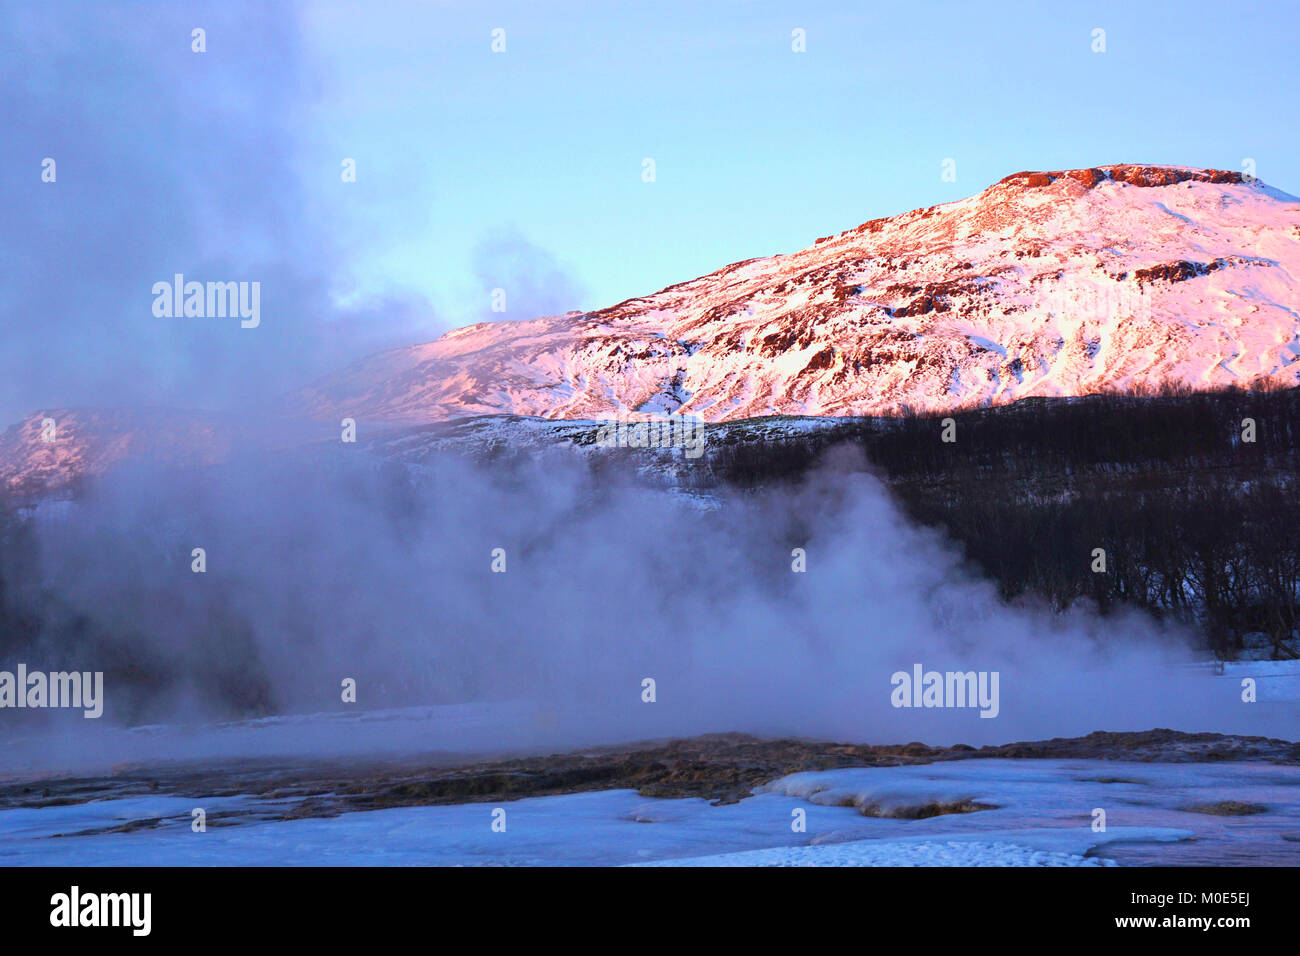 Ein beliebter Stopp entlang der Golden Circle Route für Touristen in Island ist das sehr aktive Geysir mit kochendem Mud-pits, explodierende Geysire und der lebhaften Strokkur, die trinkschnäbel Wasser 30 Meter (100 ft) in die Luft alle paar Minuten. Im Winter ist der Bereich ist immer noch sehr beliebt, der Wasserdampf Einfrieren auf Sitzen, bedeutet nur die robuststen sitzen die geothermische Aktivität zu beobachten. Stockfoto